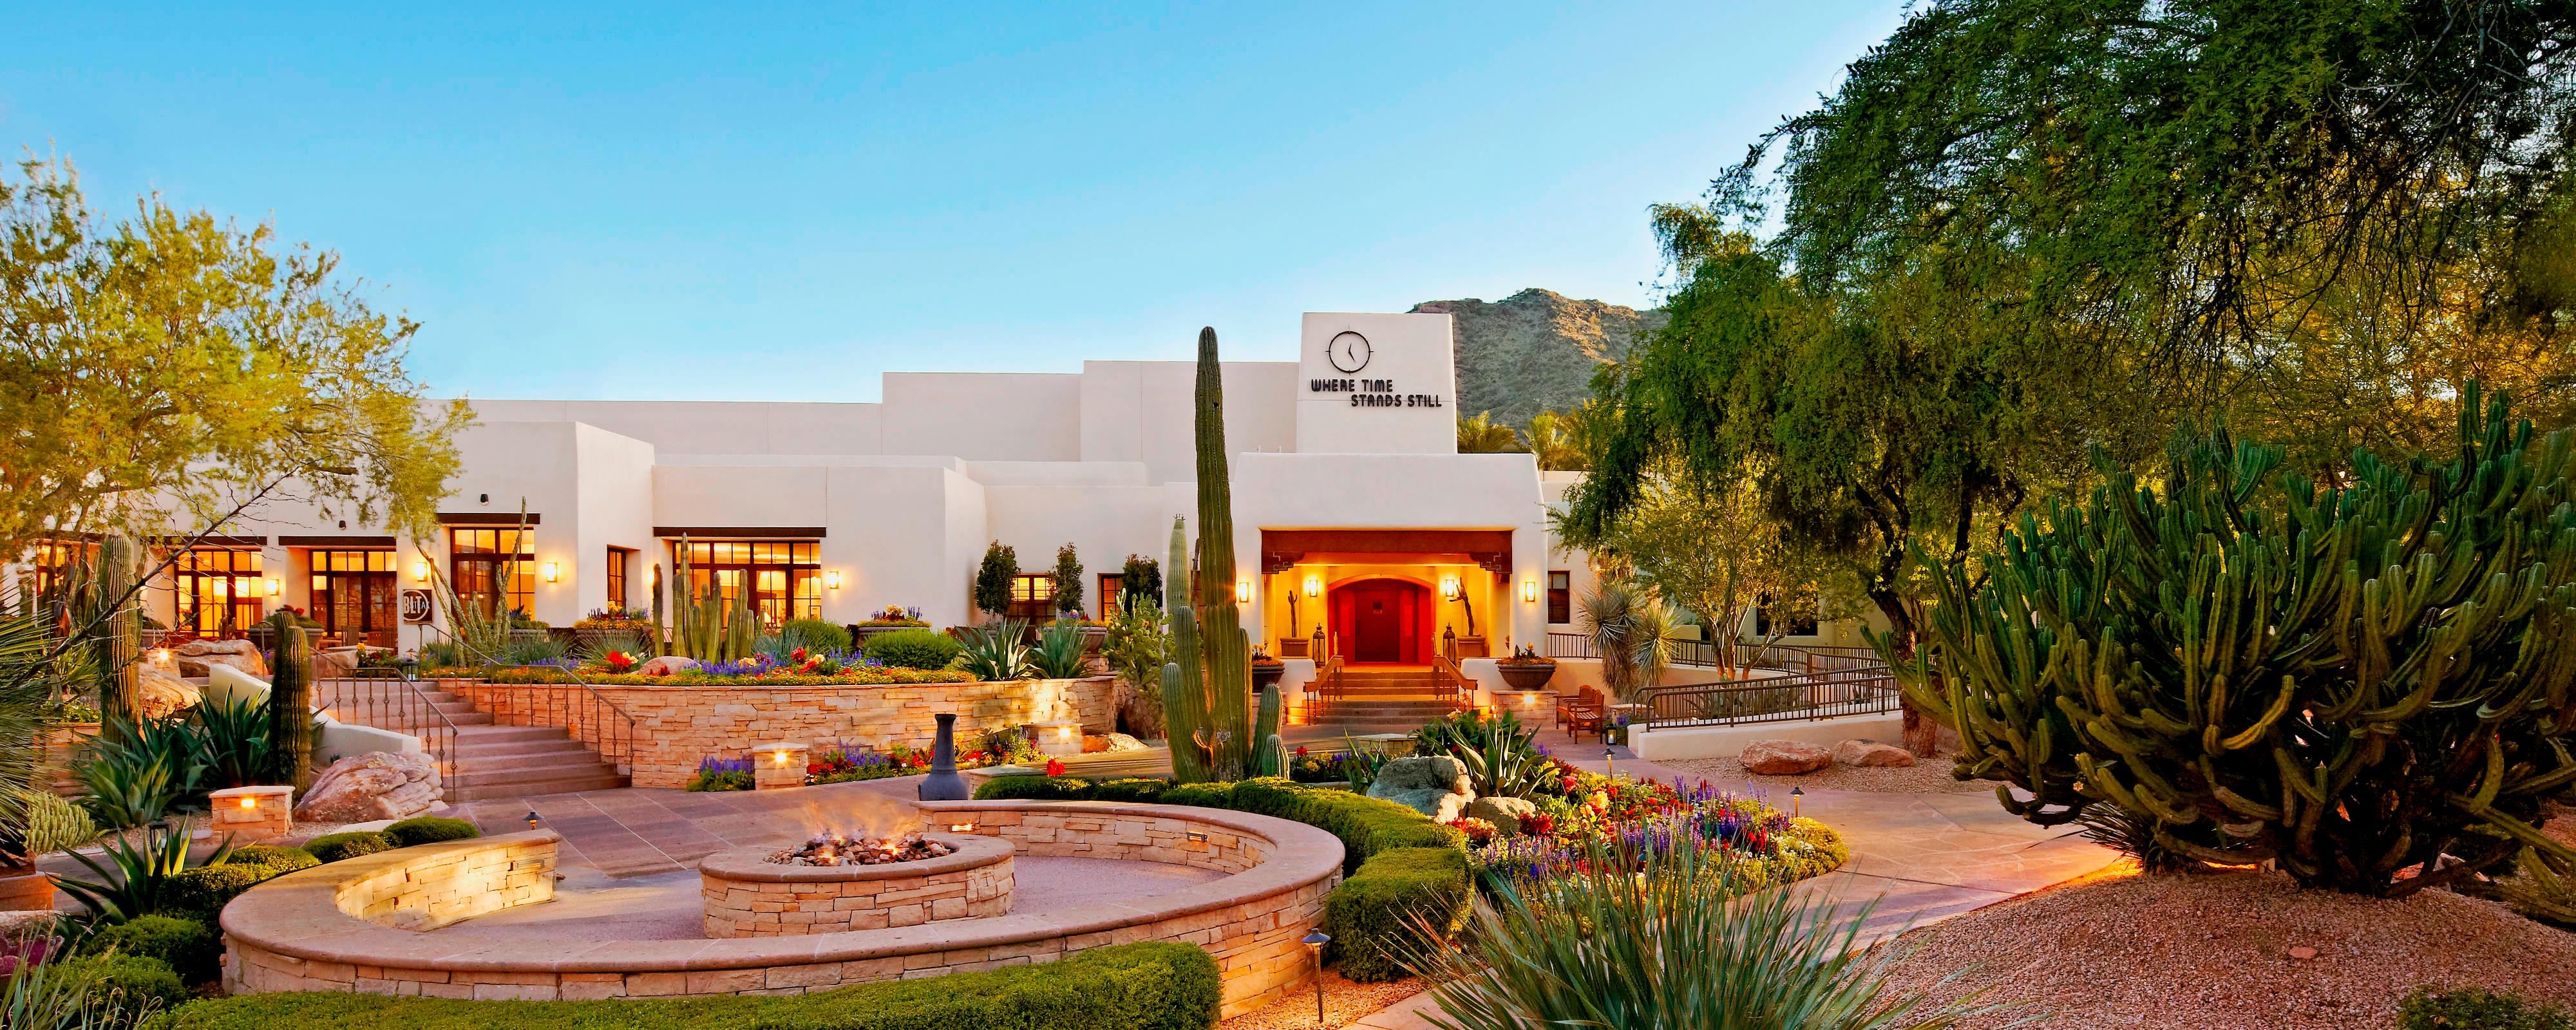 Hotel In Scottsdale Az Jw Marriott Scottsdale Camelback Inn Resort Spa